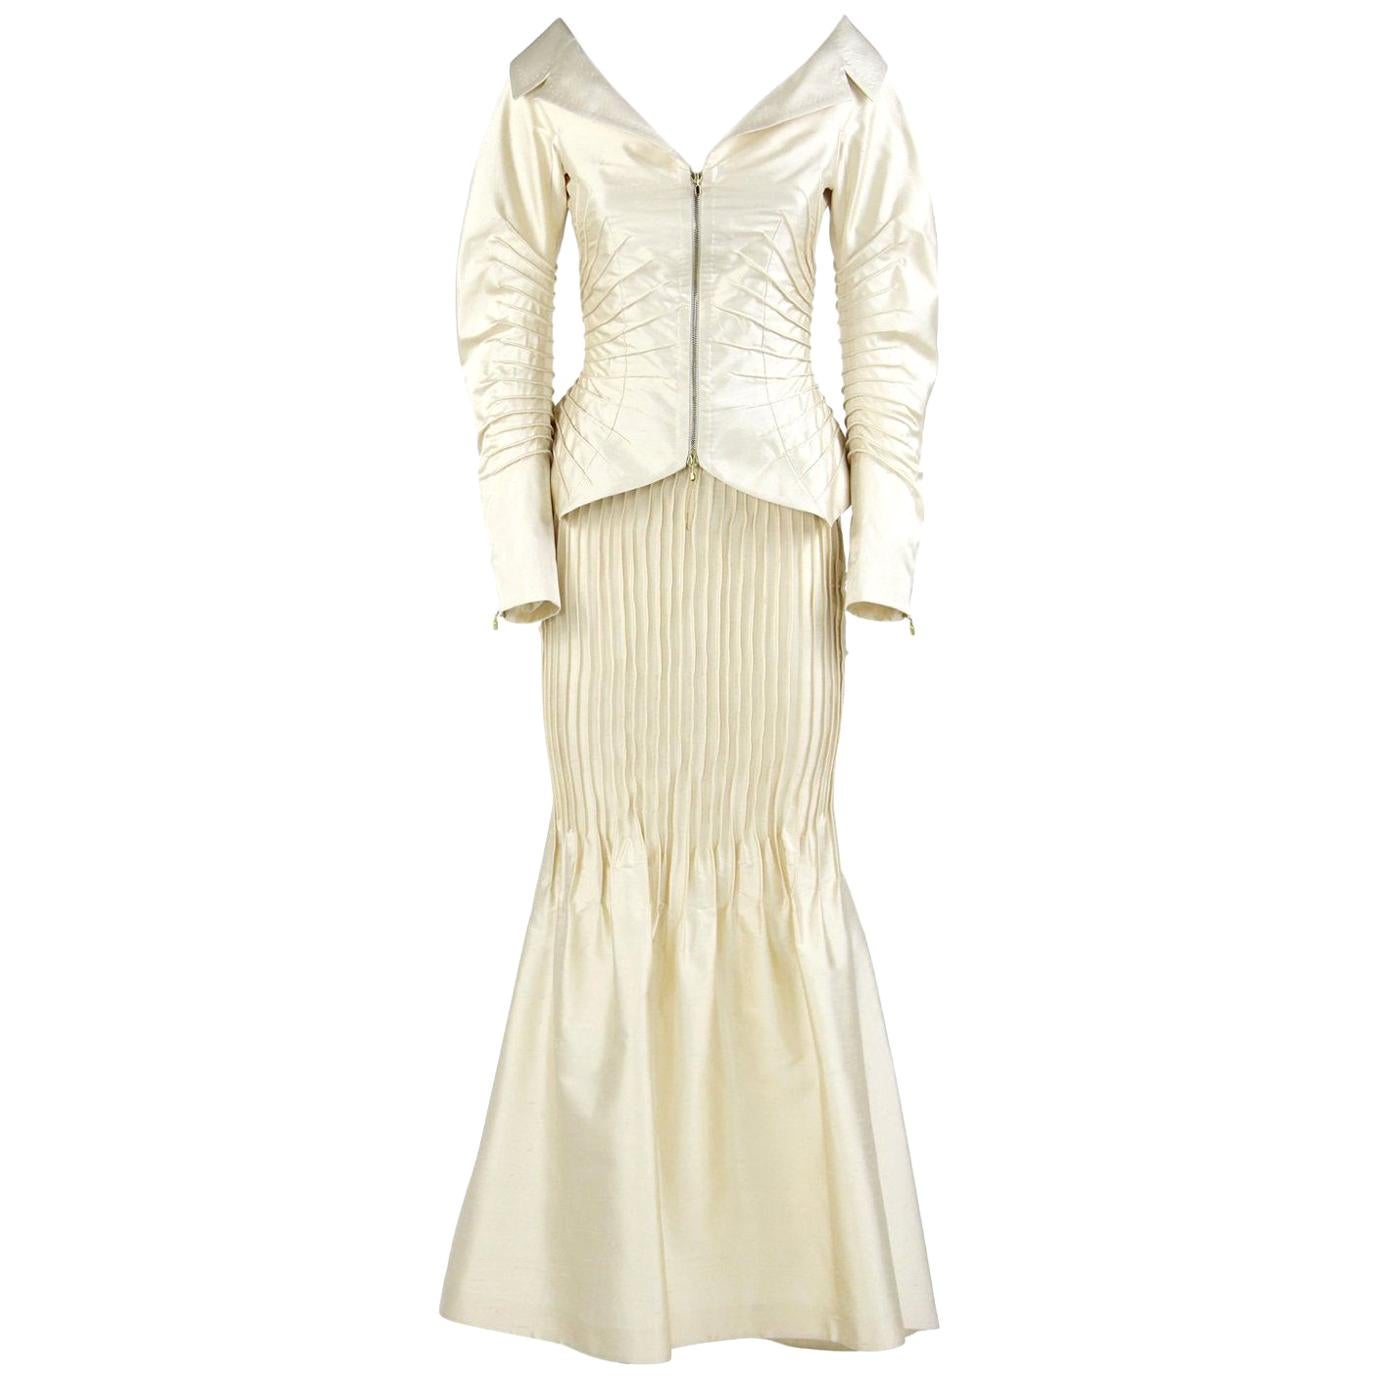 Gianfranco Ferré Ivory Silk Vintage Wedding Suit, 2000s For Sale